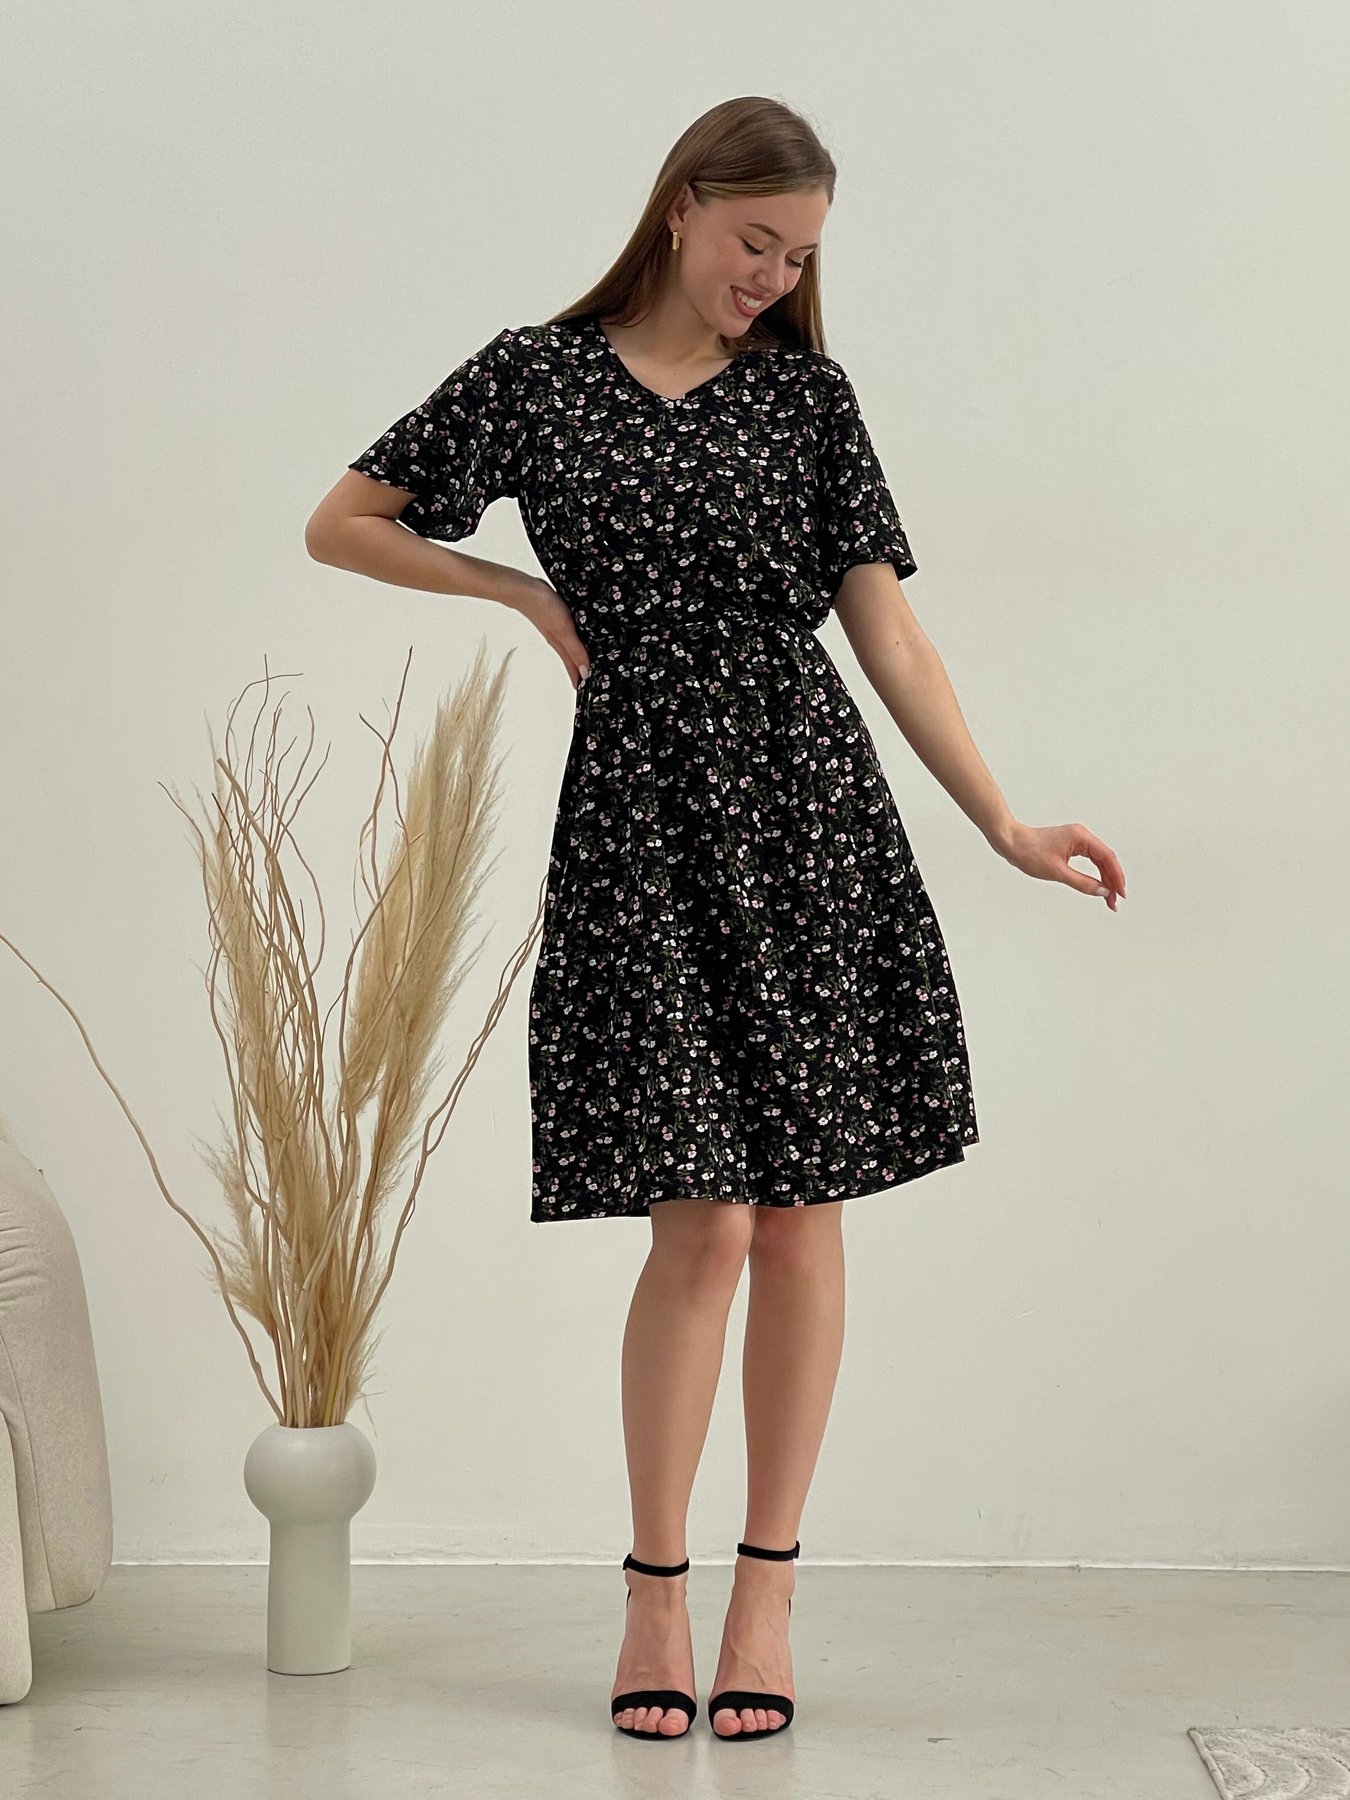 Купить Платье летнее ниже колен в цветочек черное Merlini Арко 700001321 размер 42-44 (S-M) в интернет-магазине